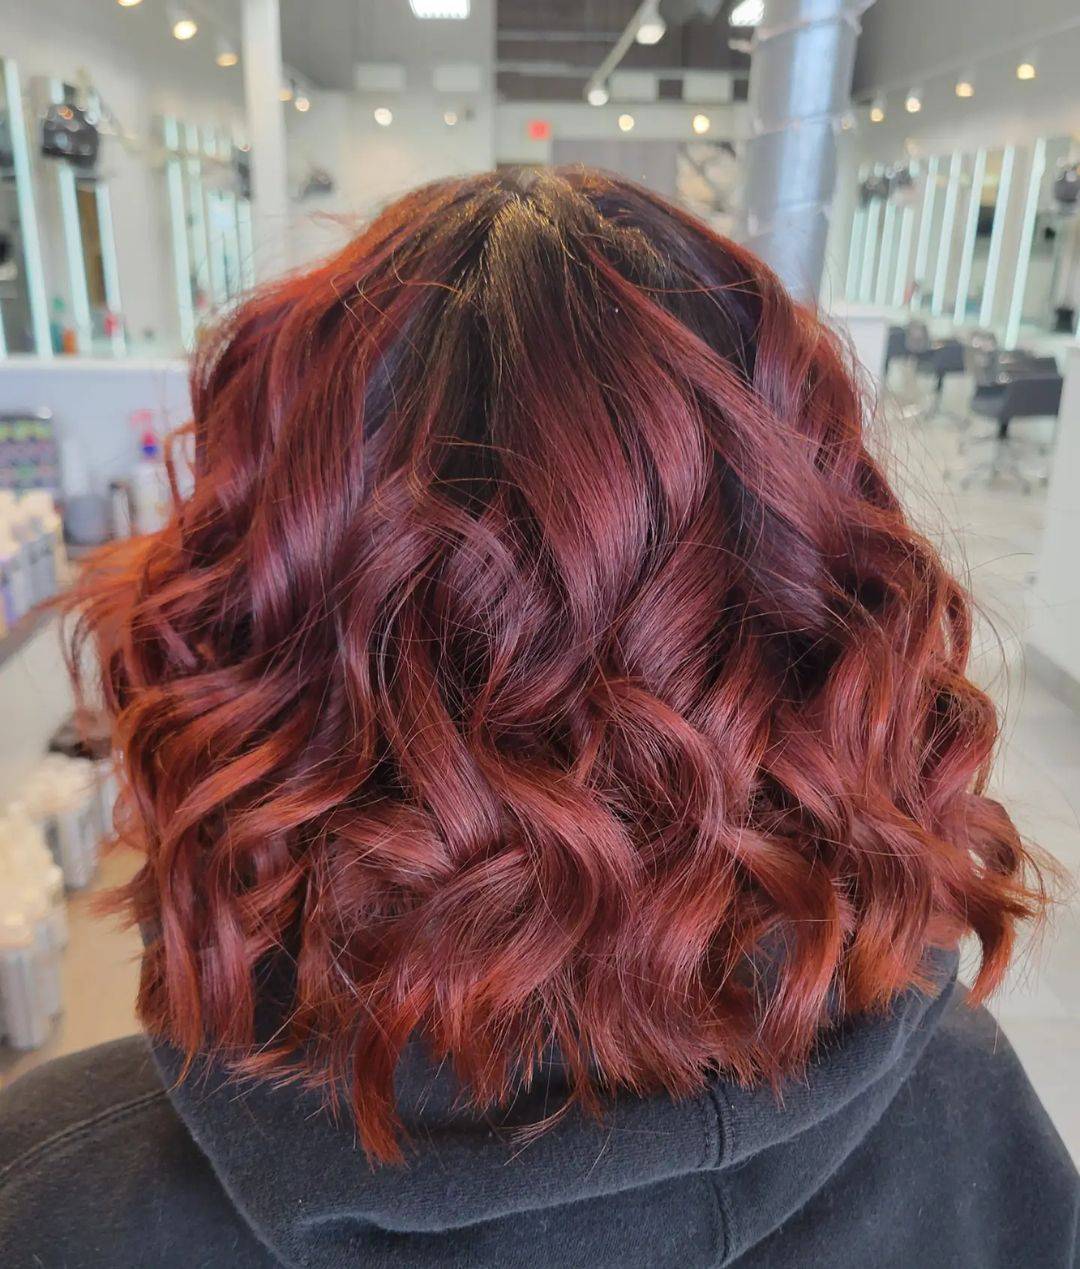 Burgundy hair color 321 burgundy hair color | burgundy hair color for women | burgundy hair color highlights Burgundy Hair Color